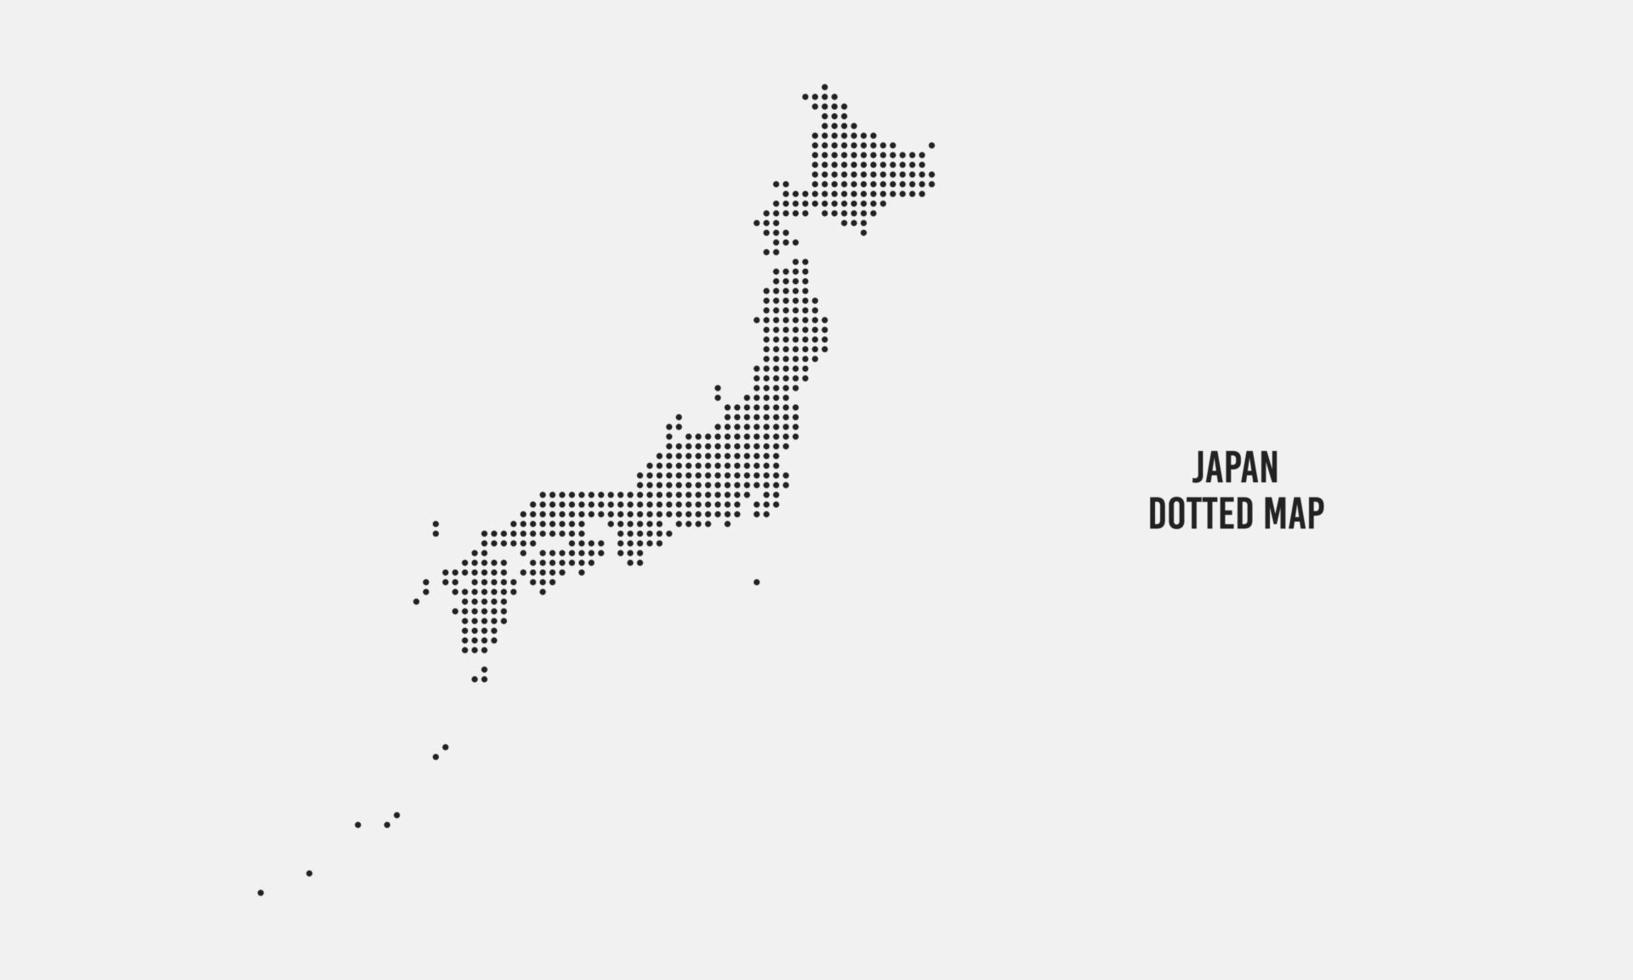 mezzitoni tratteggiata Giappone carta geografica vettore illustrazione isolato su leggero grigio sfondo